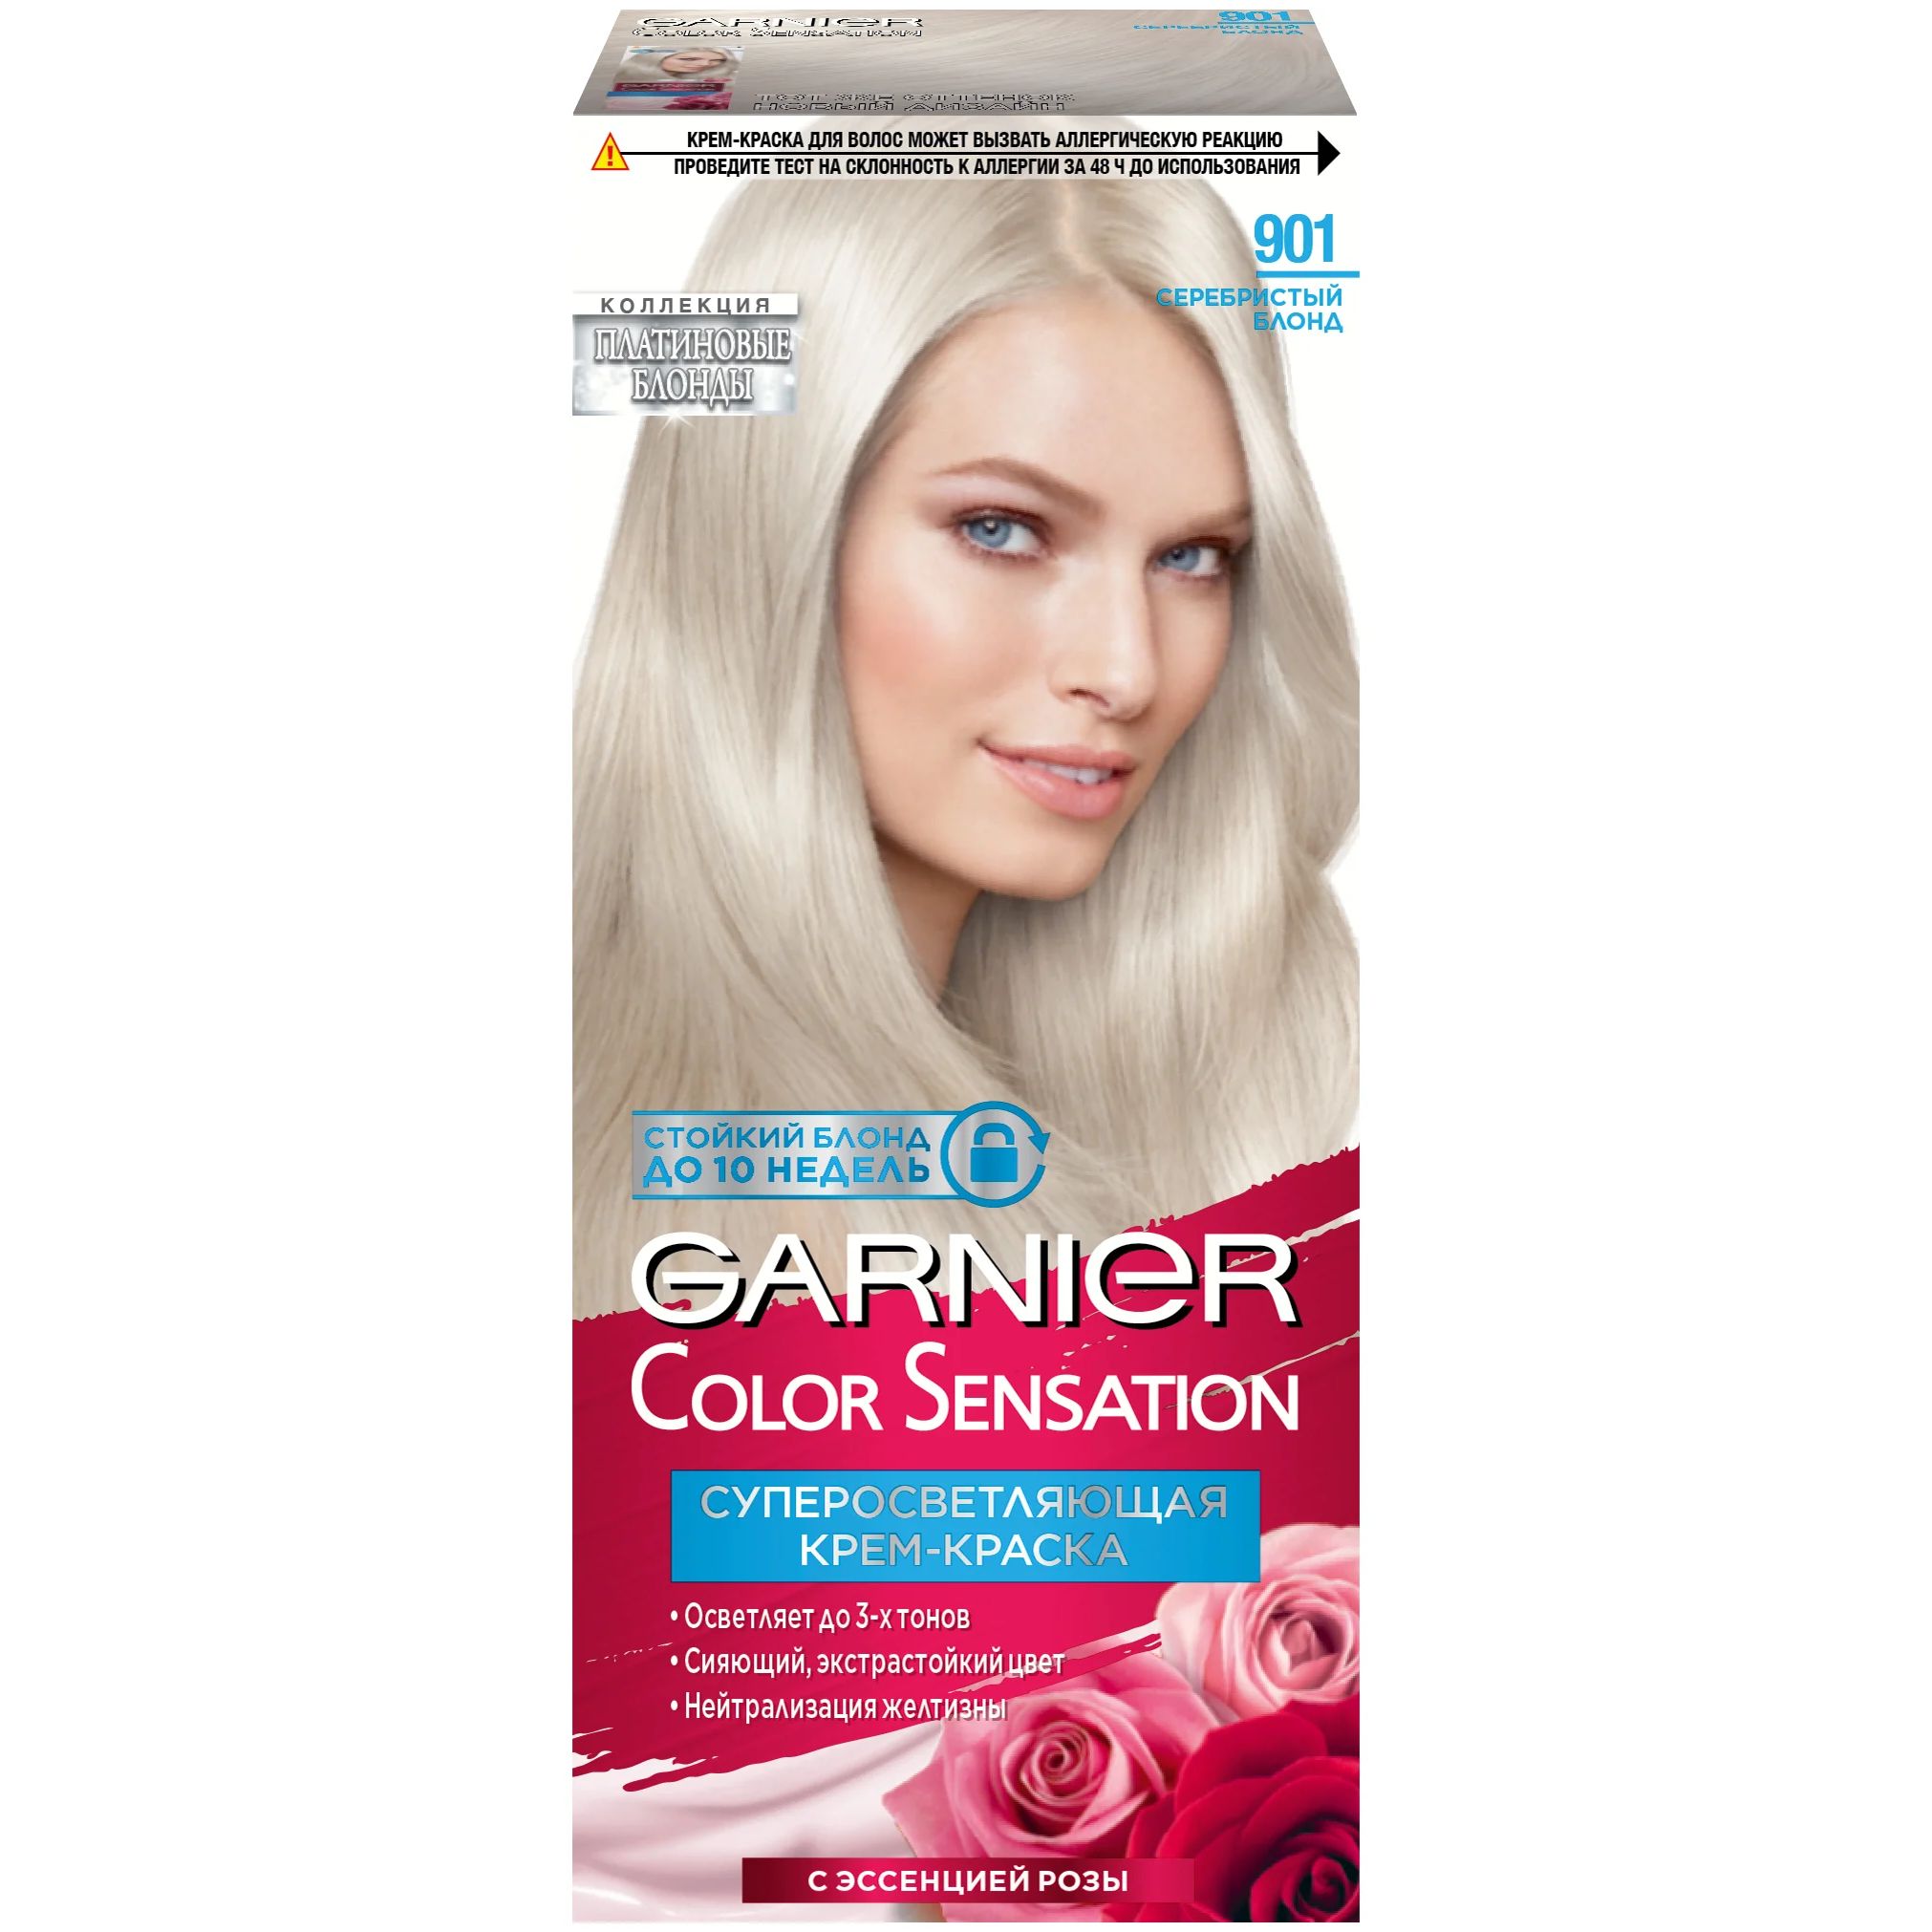 Крем-краска для волос Garnier Color Sensation 901 Серебристый Блонд uniclean подарочный набор шампунь для йорков с маточным молочком и крем мыло с маточным молочком